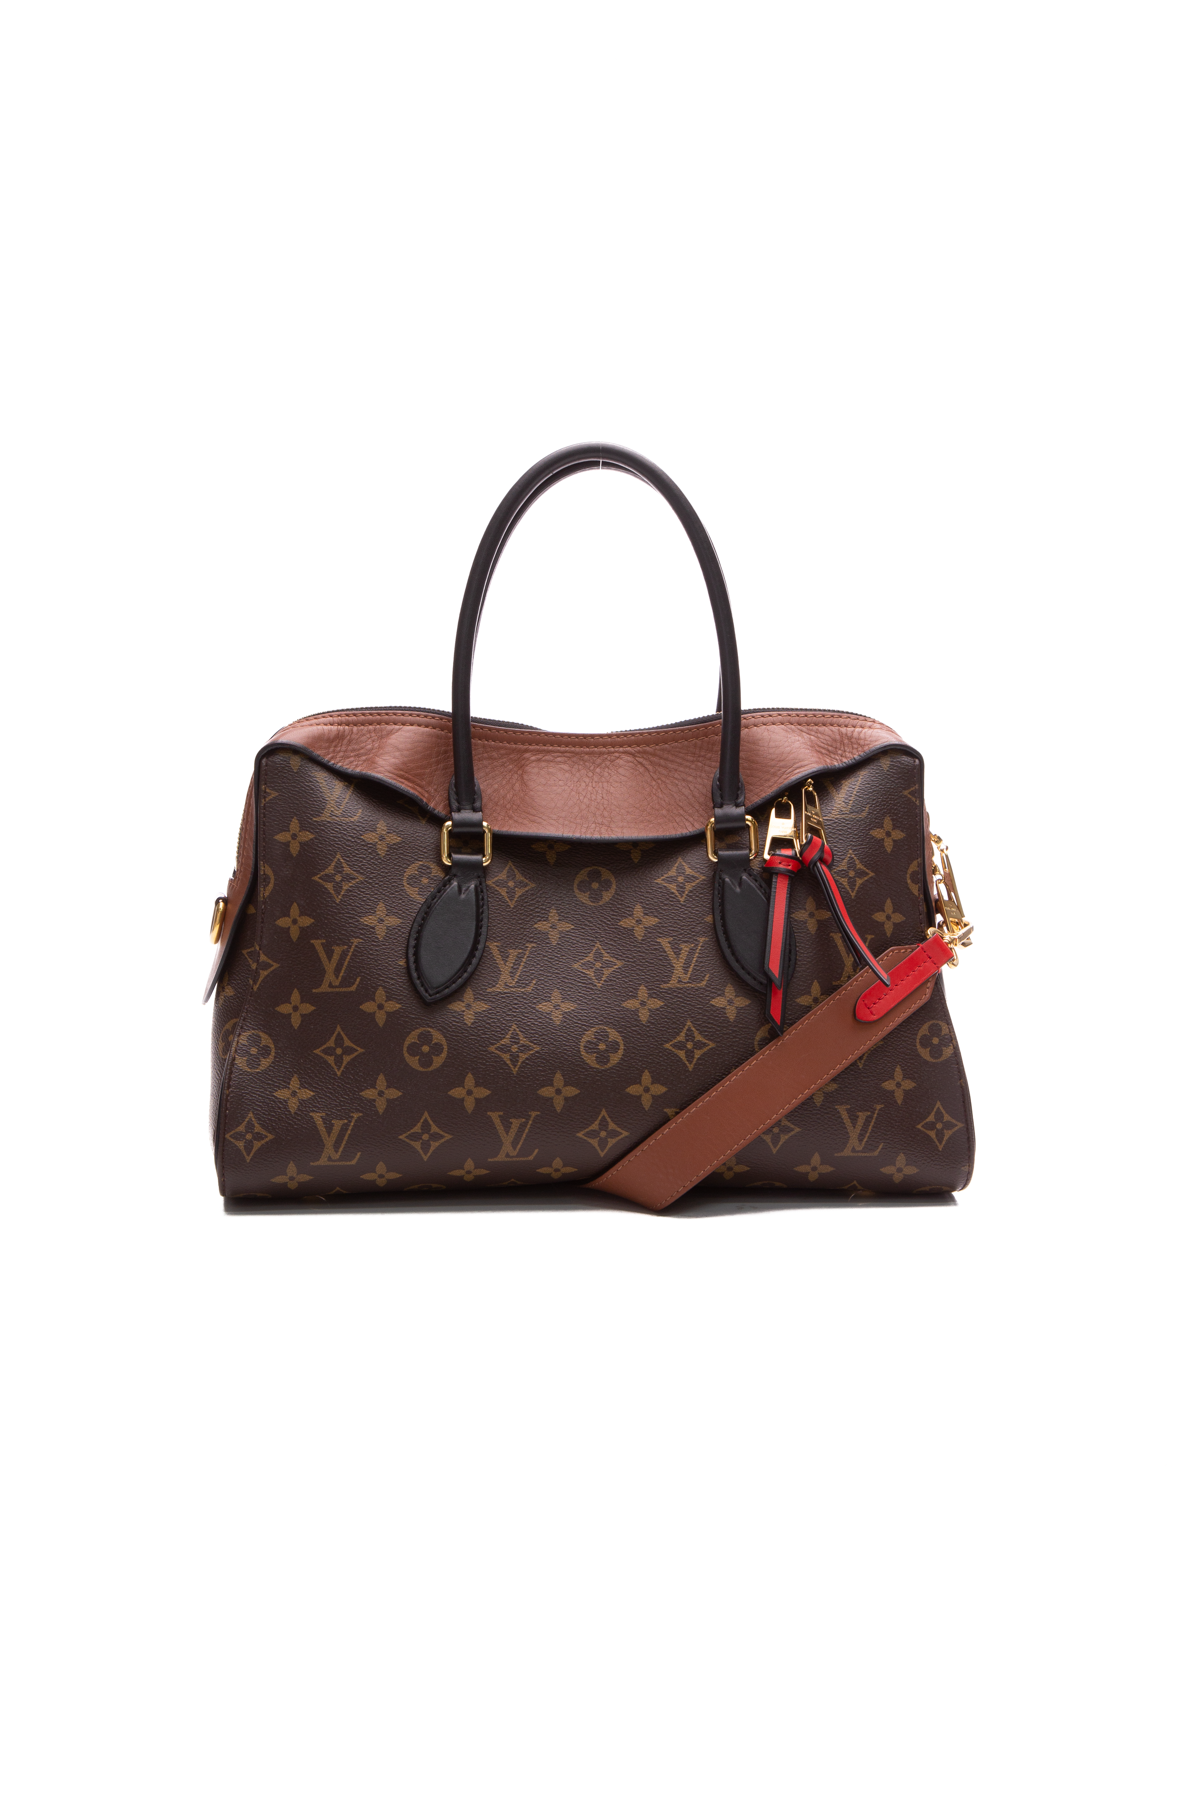 Louis Vuitton Tuileries Monogram Canvas Leather Shoulder Bag